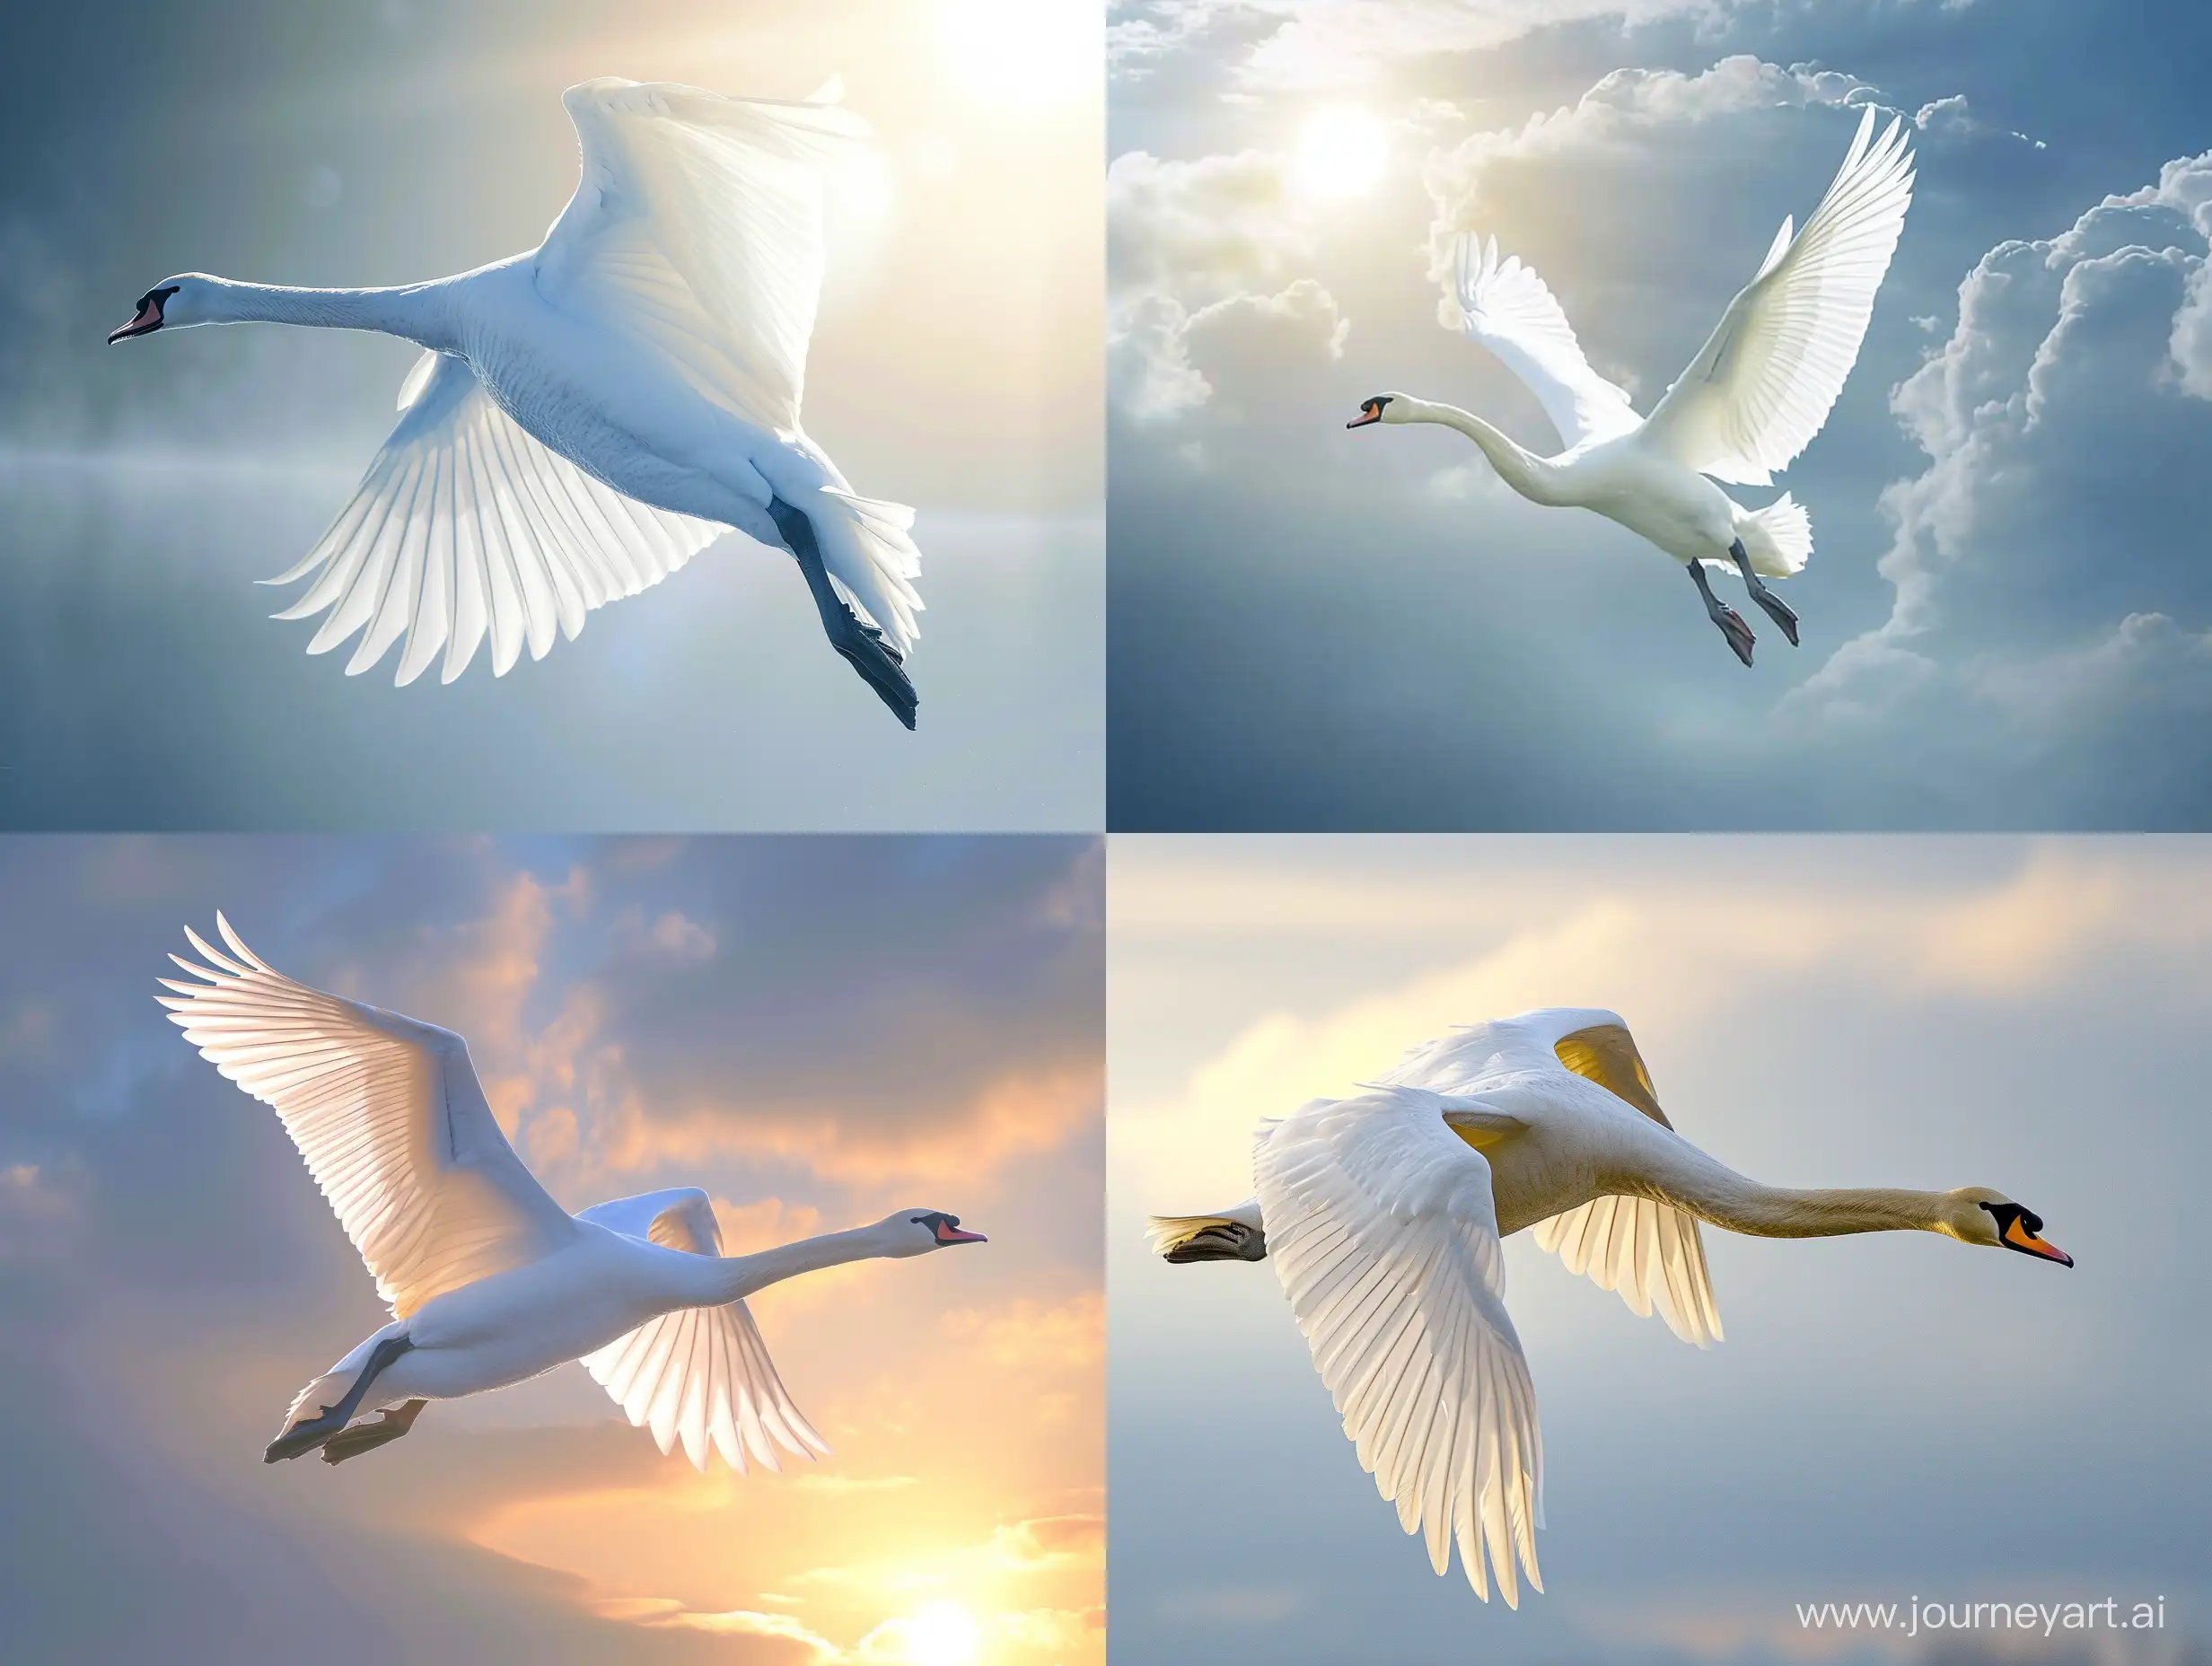 Graceful-White-Swan-Soaring-in-Prayerful-Flight